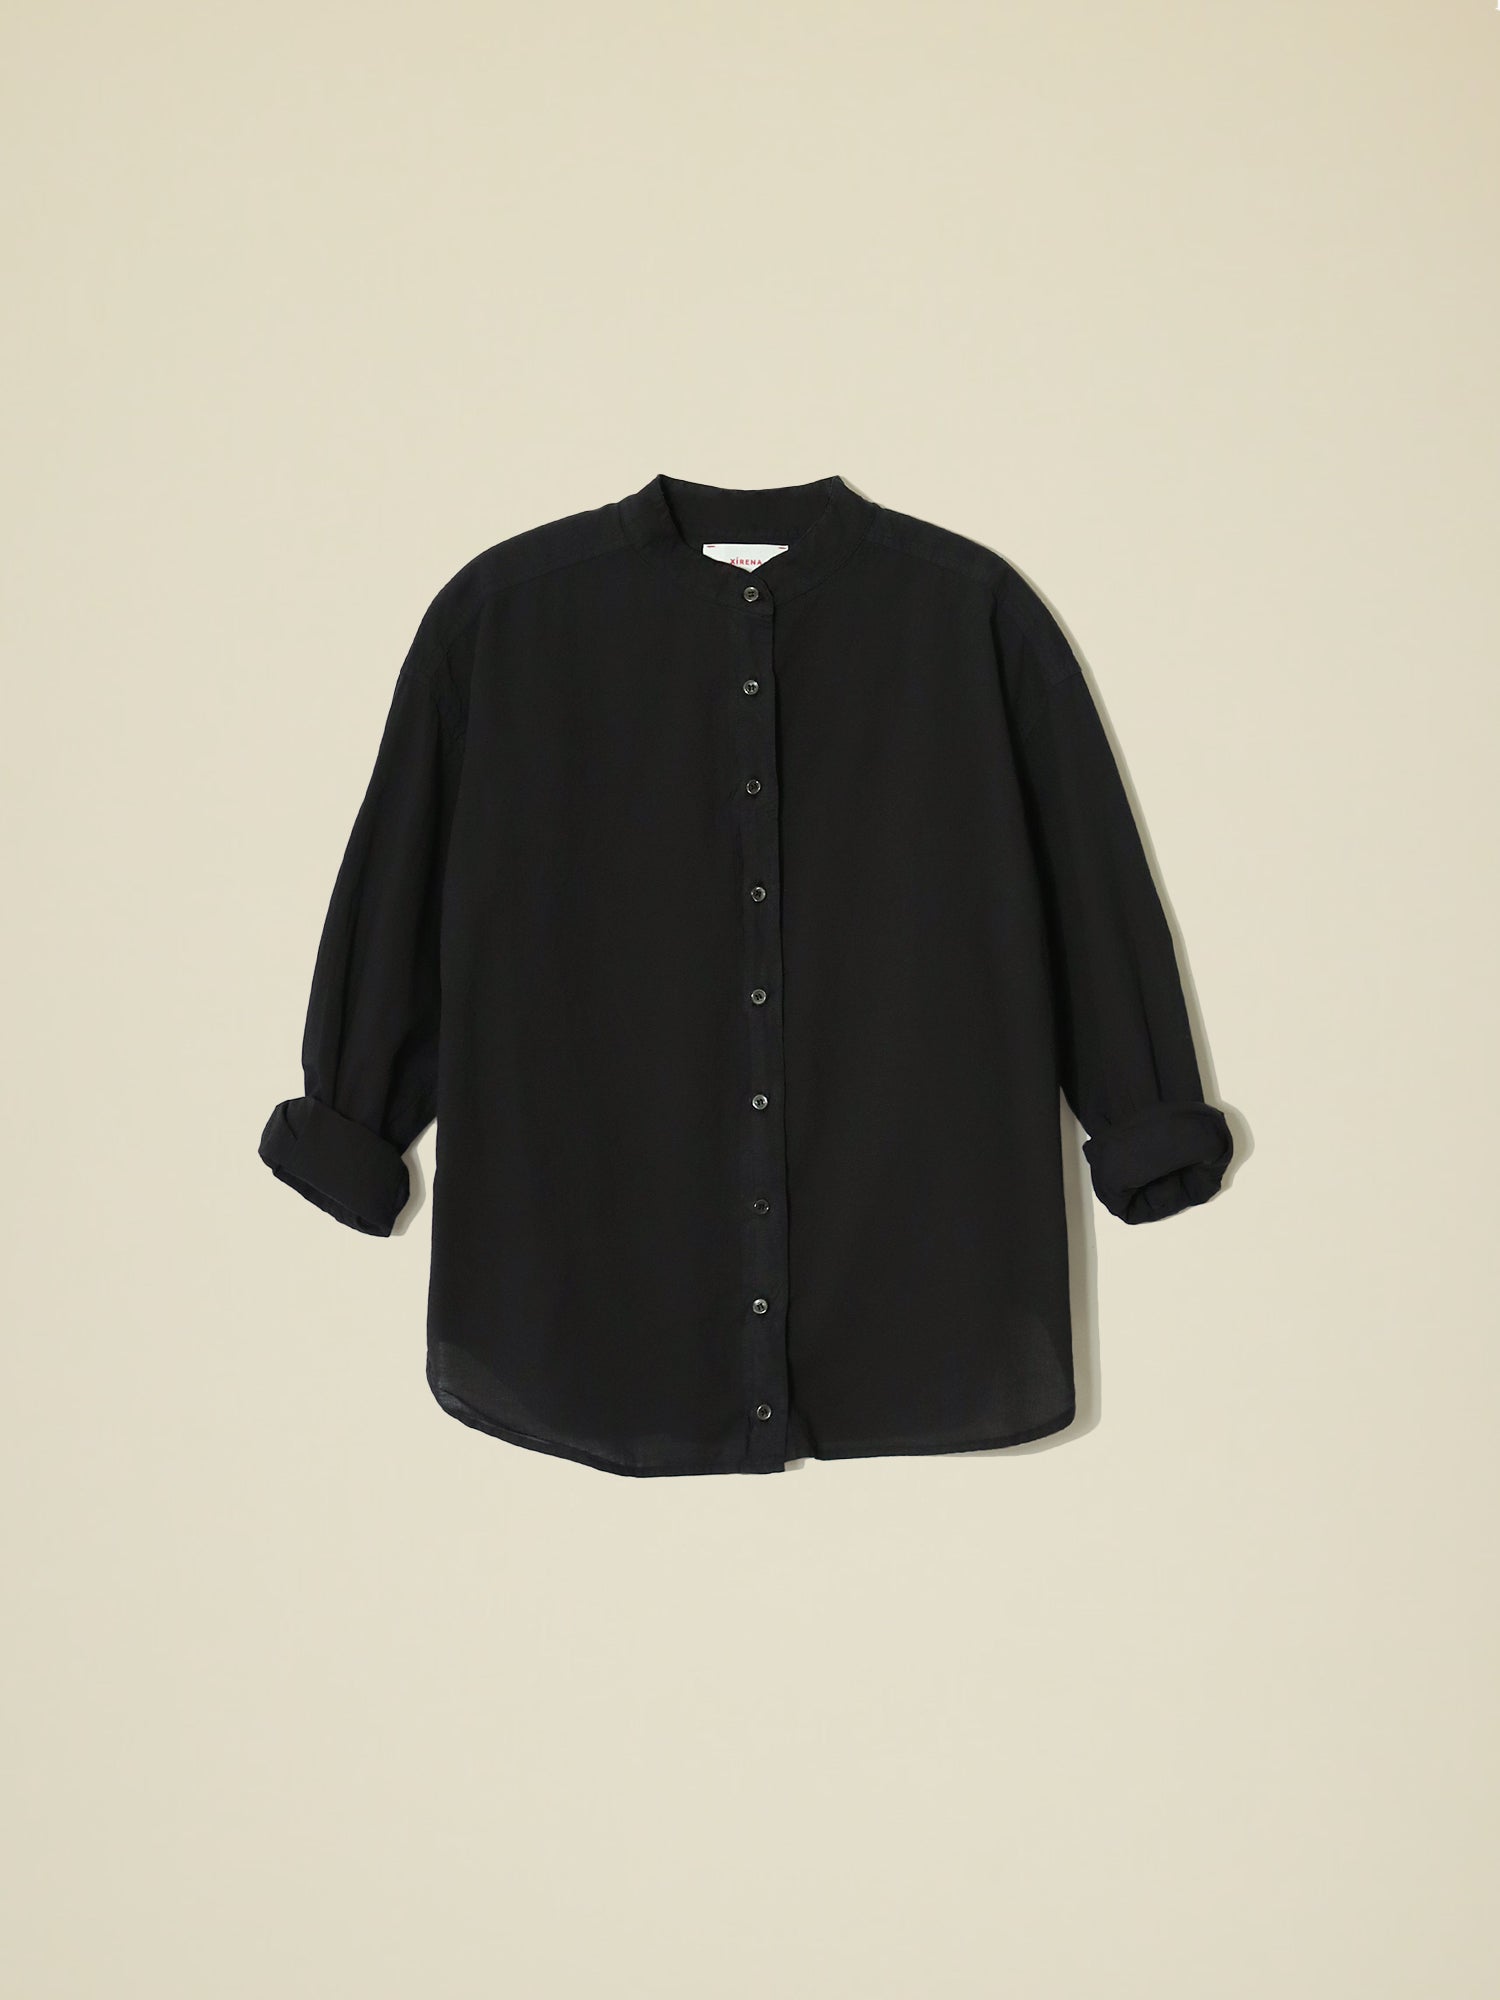 Wilder Shirt in Black